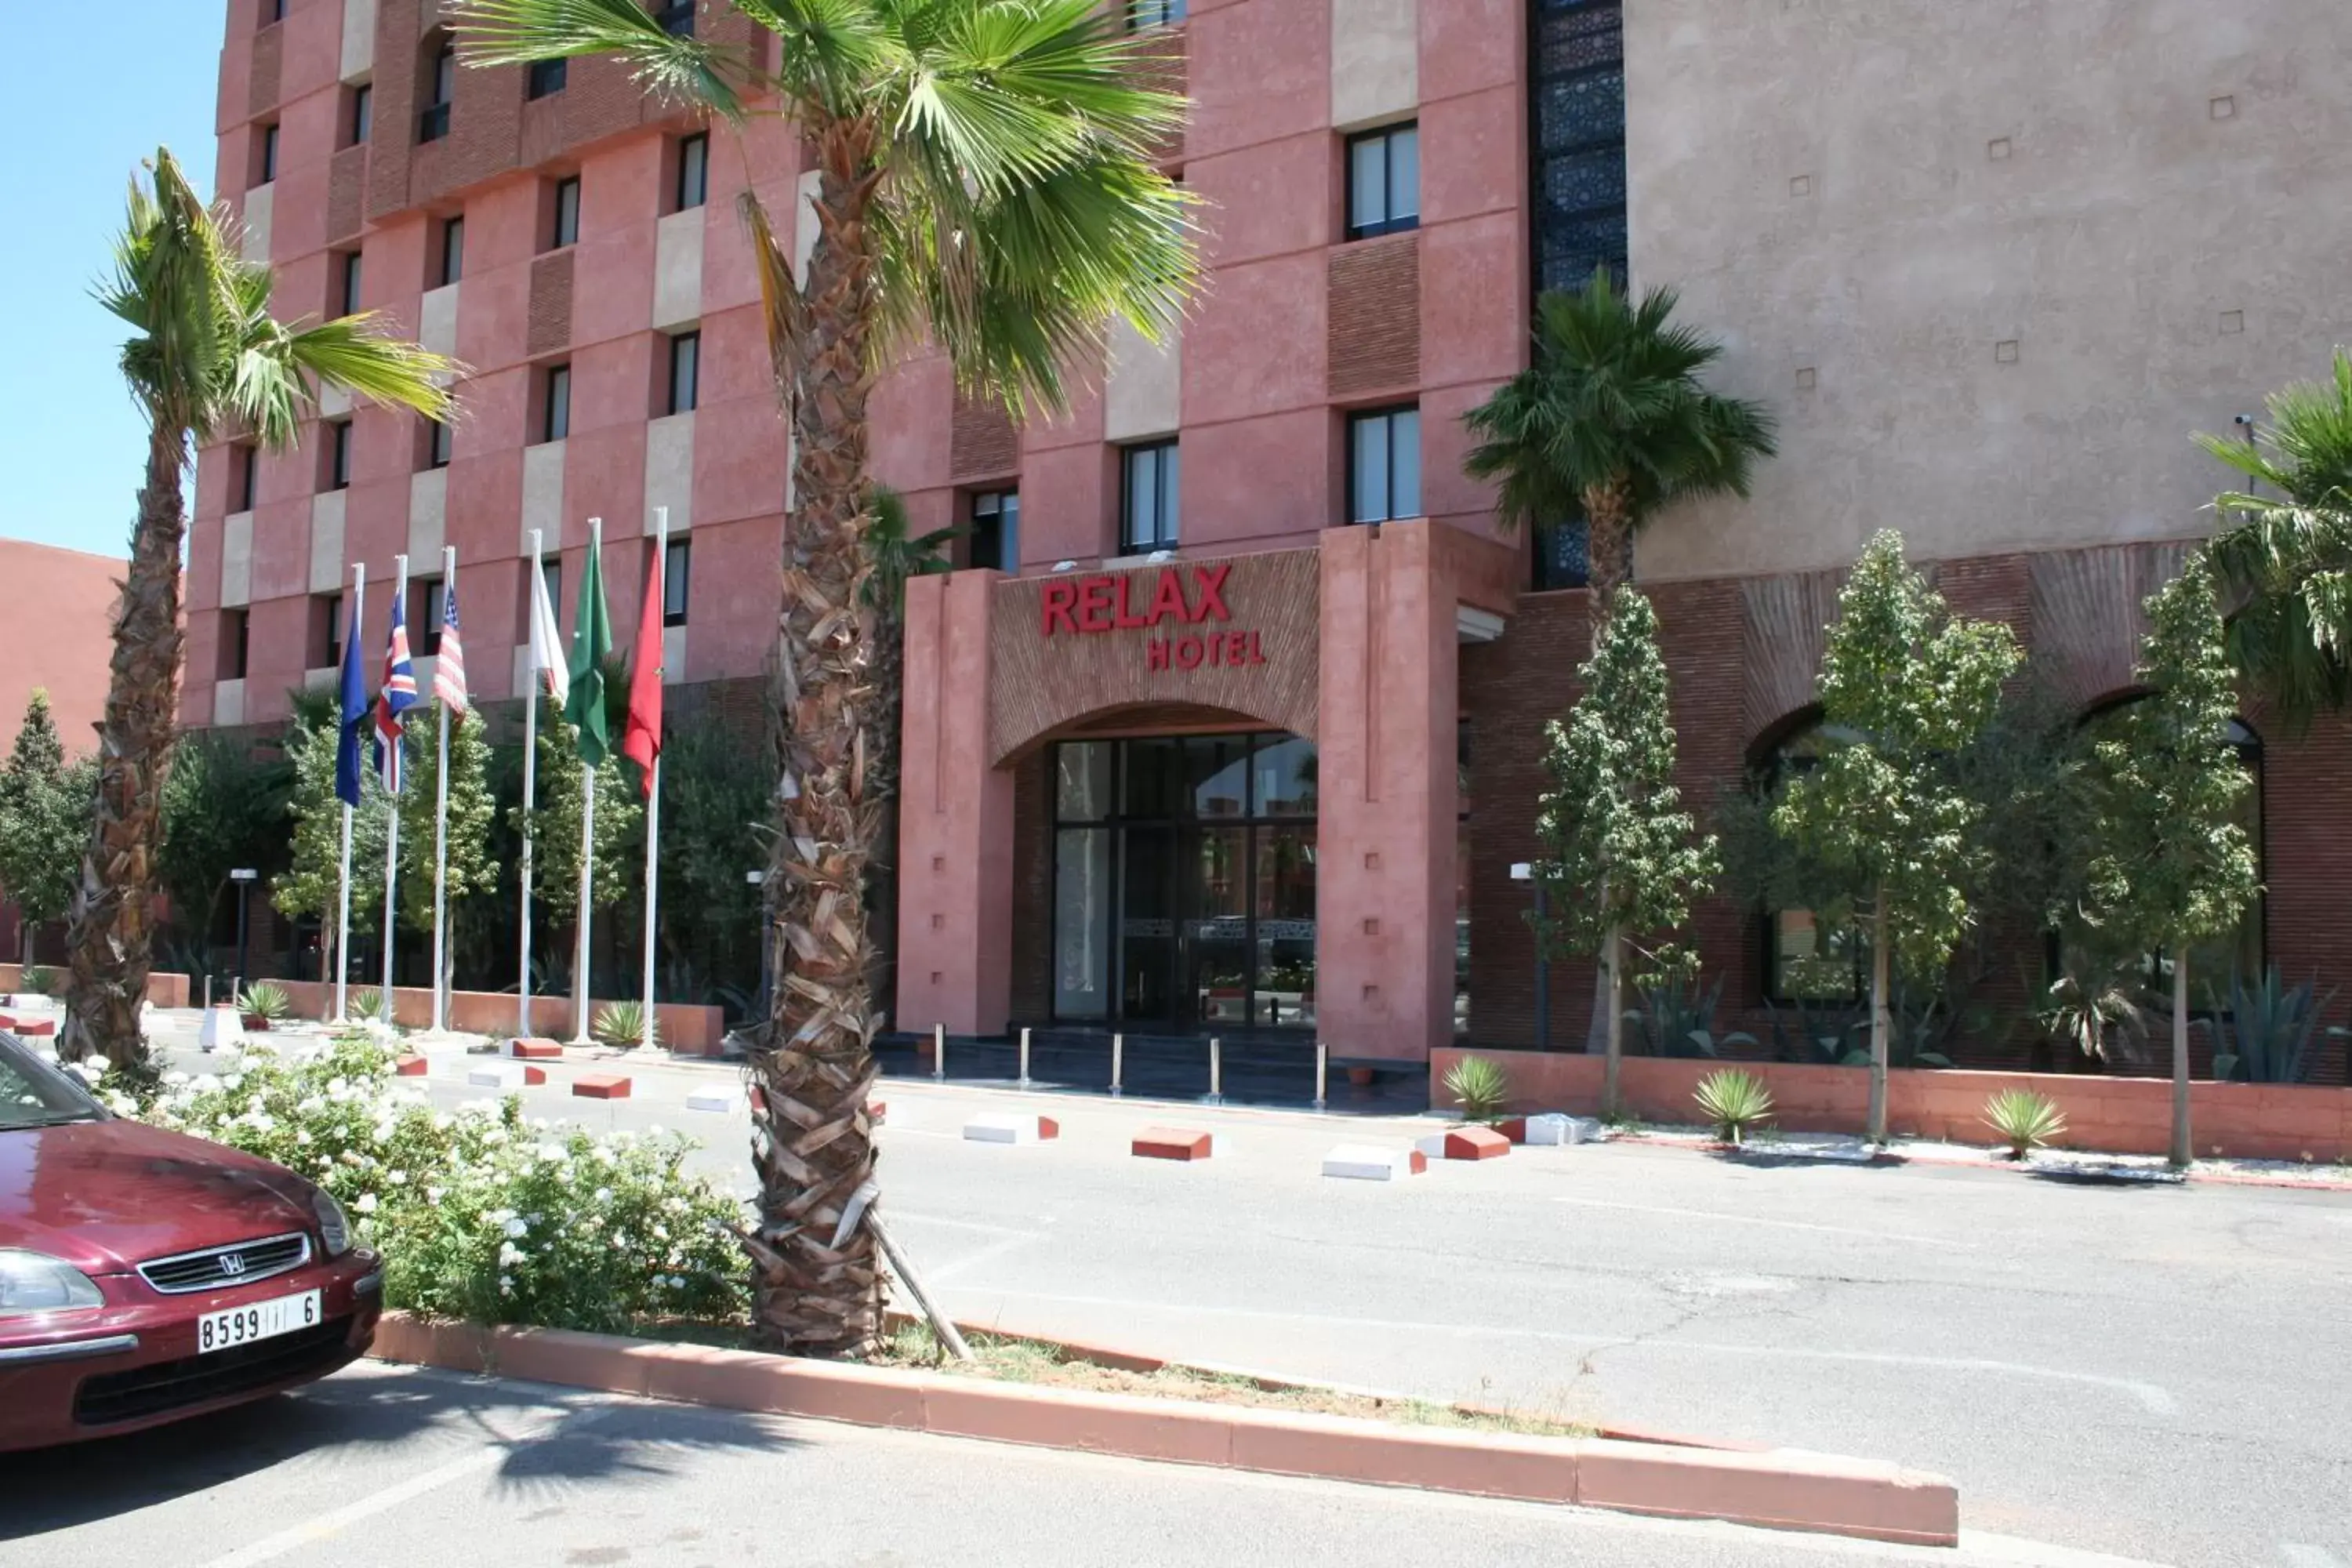 Facade/entrance, Property Building in Hotel Relax Marrakech